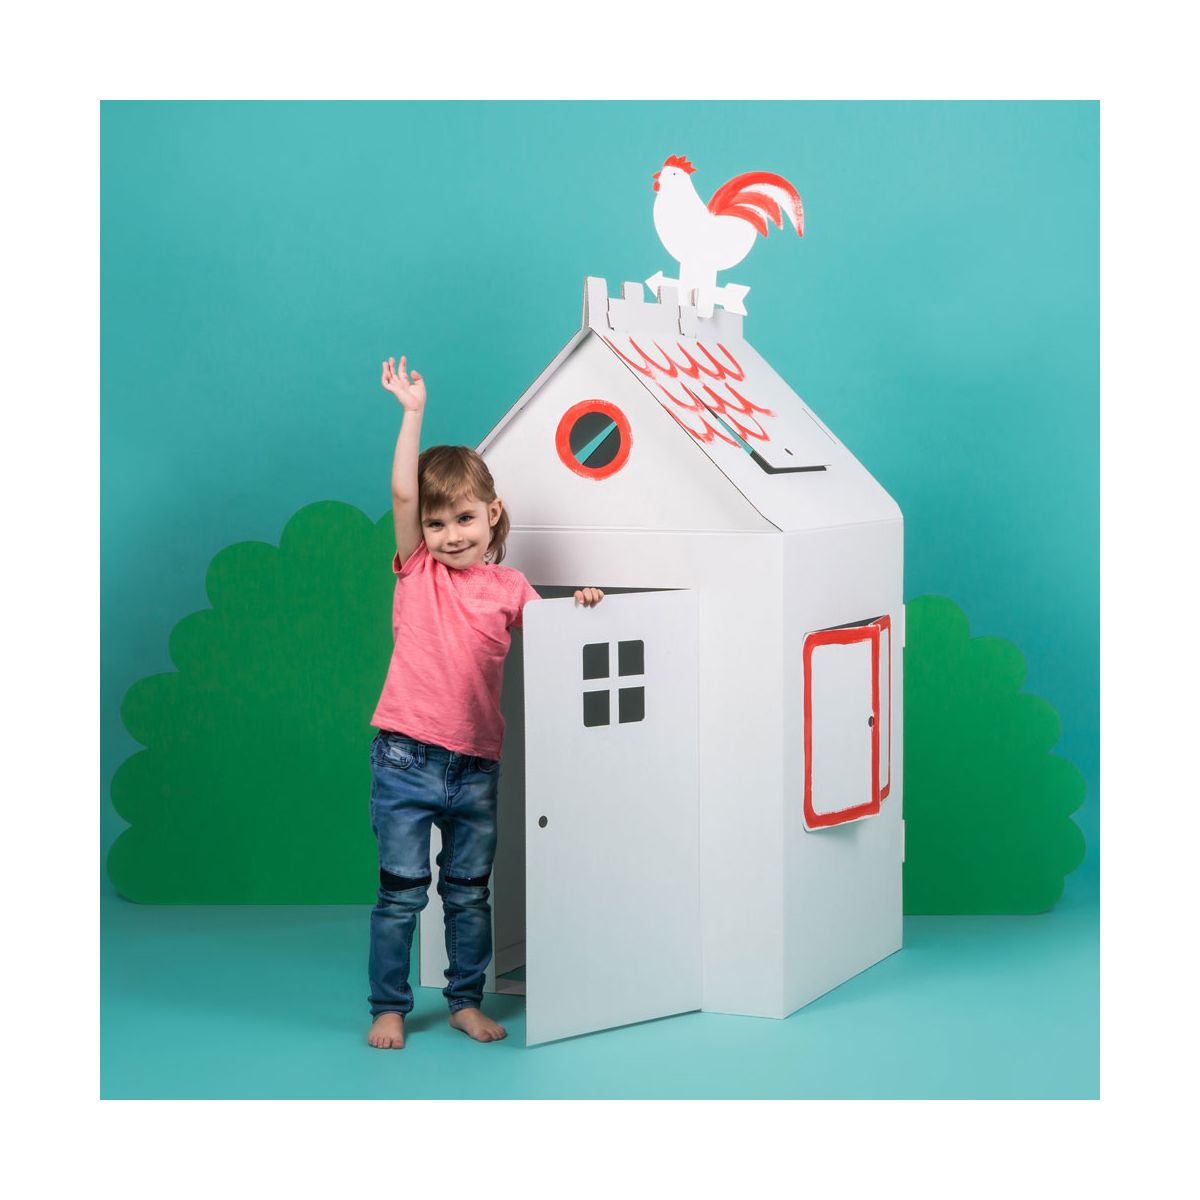 Großes Papphaus für Kinder-kreatives Spiel im Haus und GartenPappe kartonhaus 